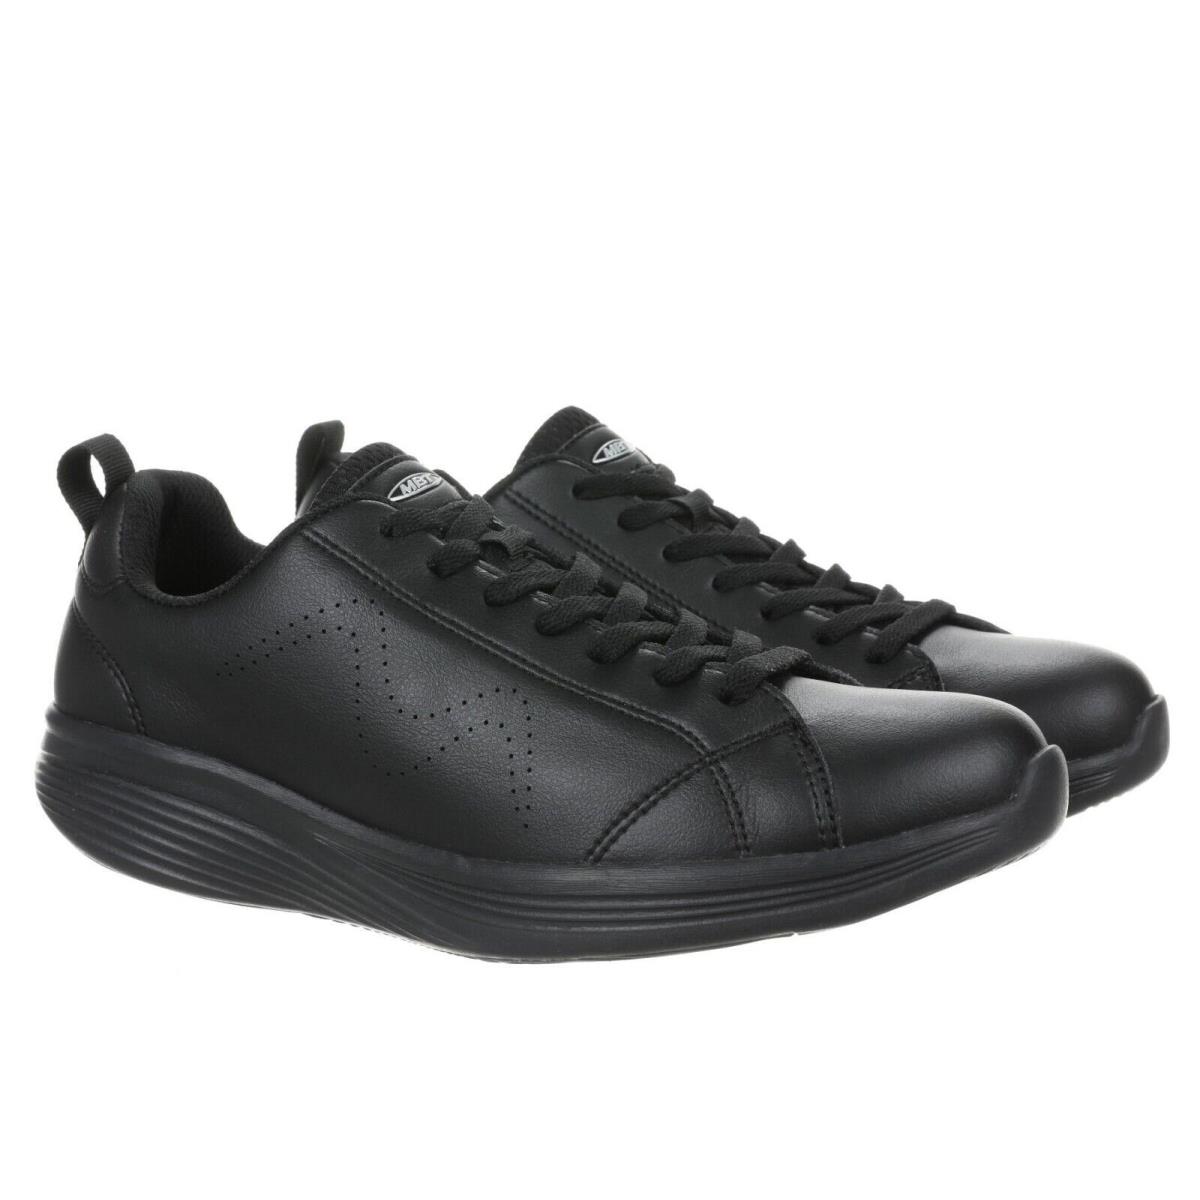 MBT shoes REN - BLACK/BLACK-702758-257L 4